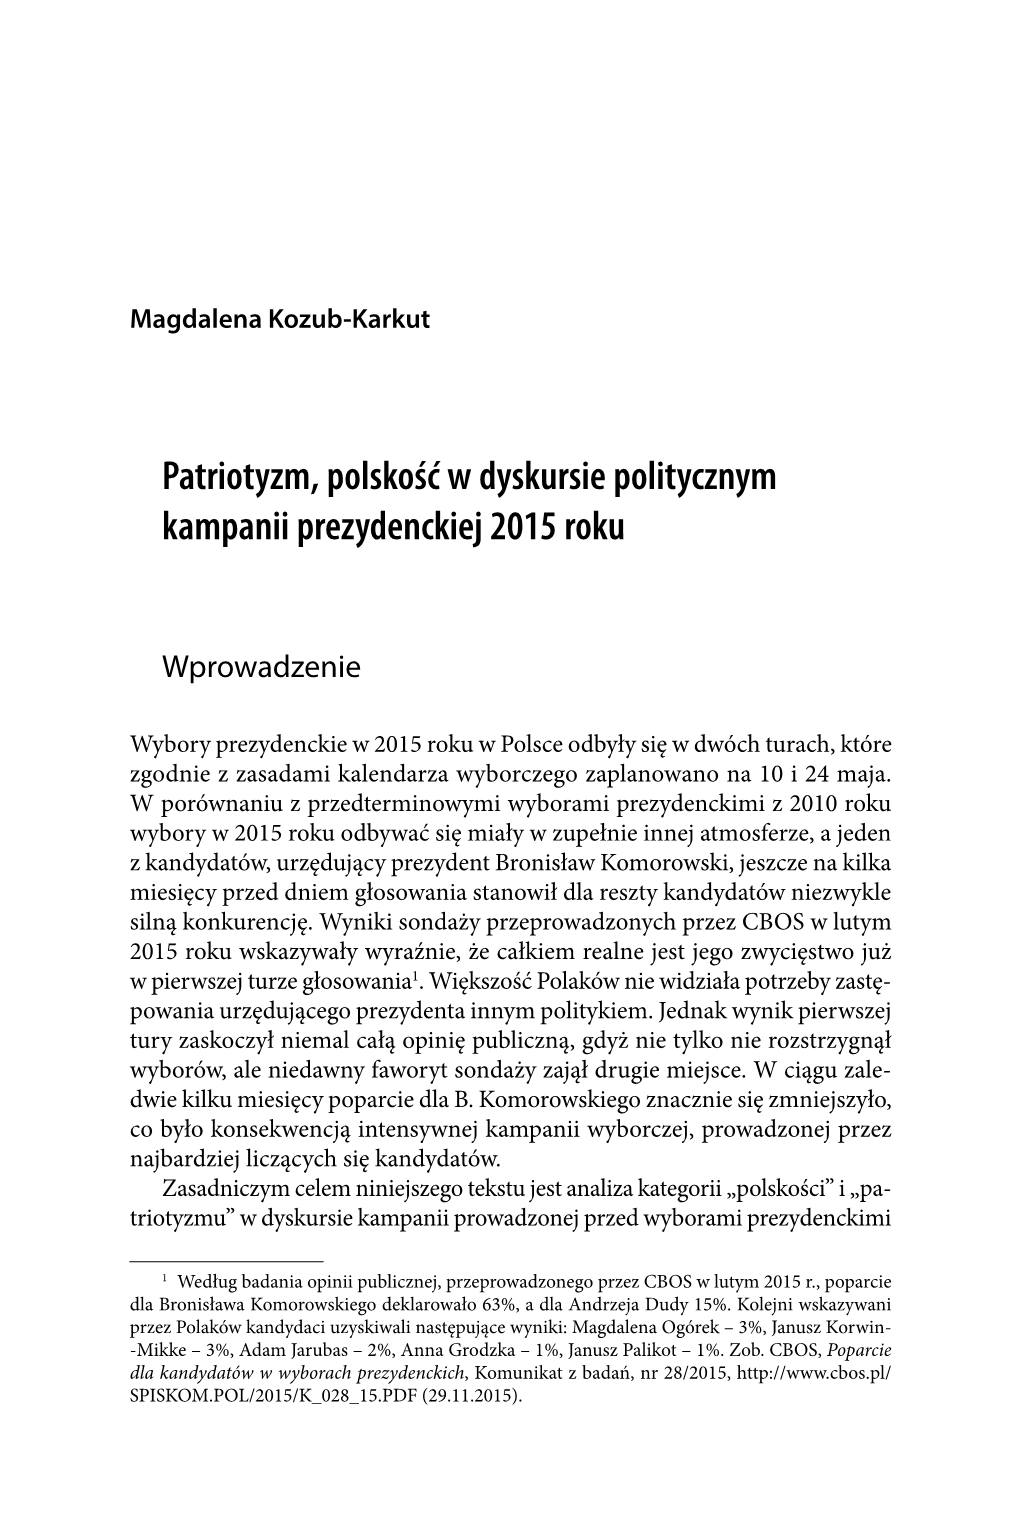 Patriotyzm, Polskość W Dyskursie Politycznym Kampanii Prezydenckiej 2015 Roku